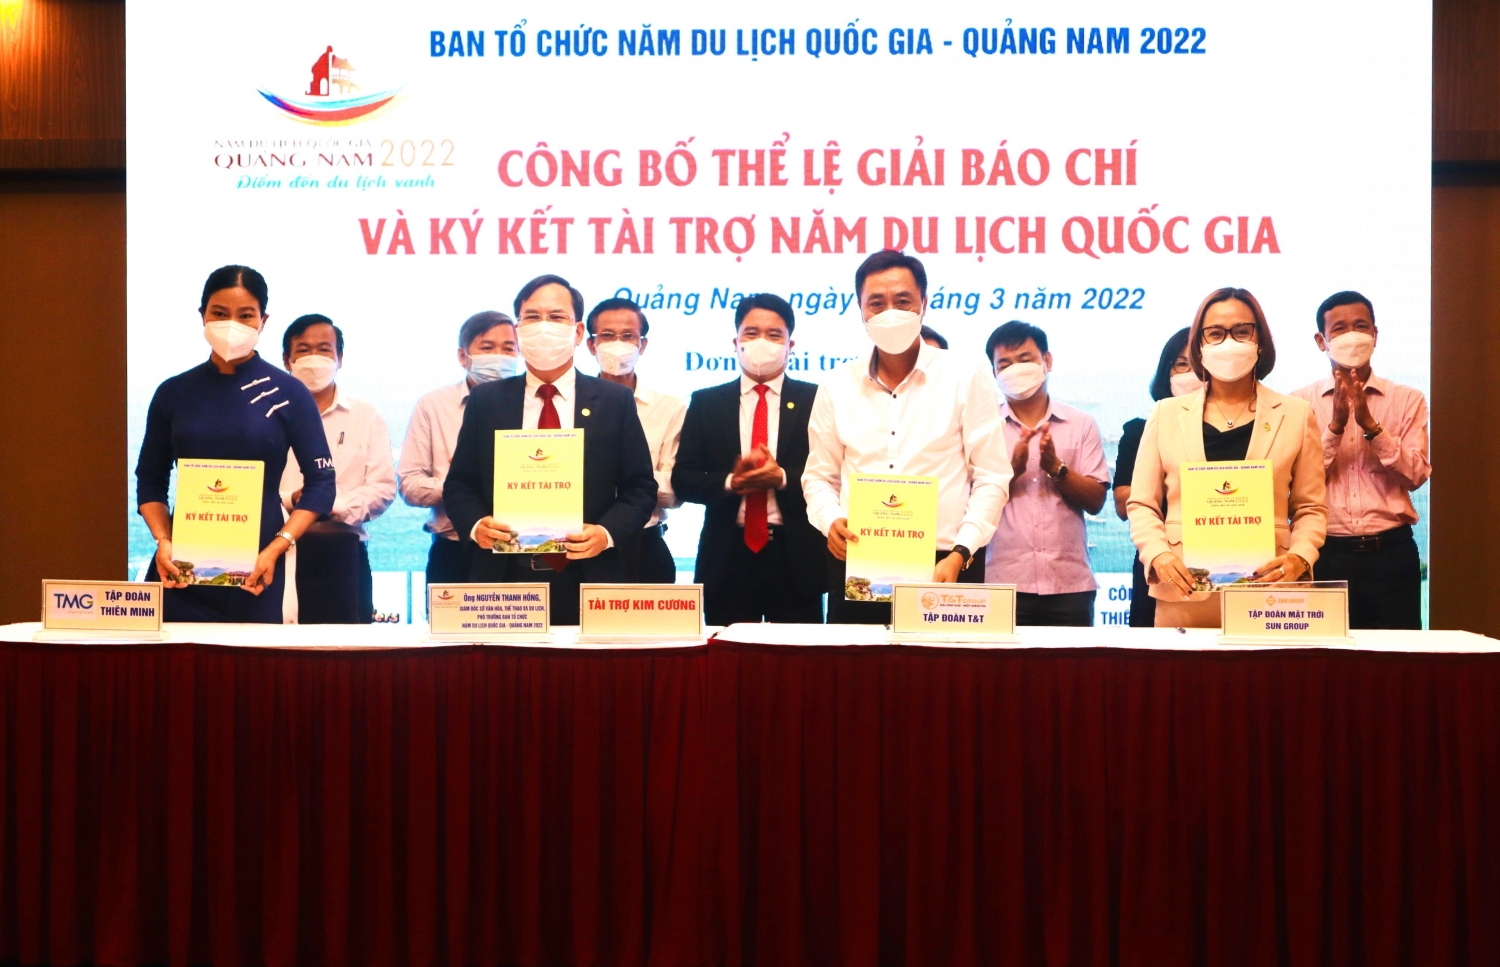 Gia đình và DN của doanh nhân Đỗ Quang Hiển ủng hộ tỉnh Điện Biên 20 tỷ đồng xây nhà cho hộ nghèo